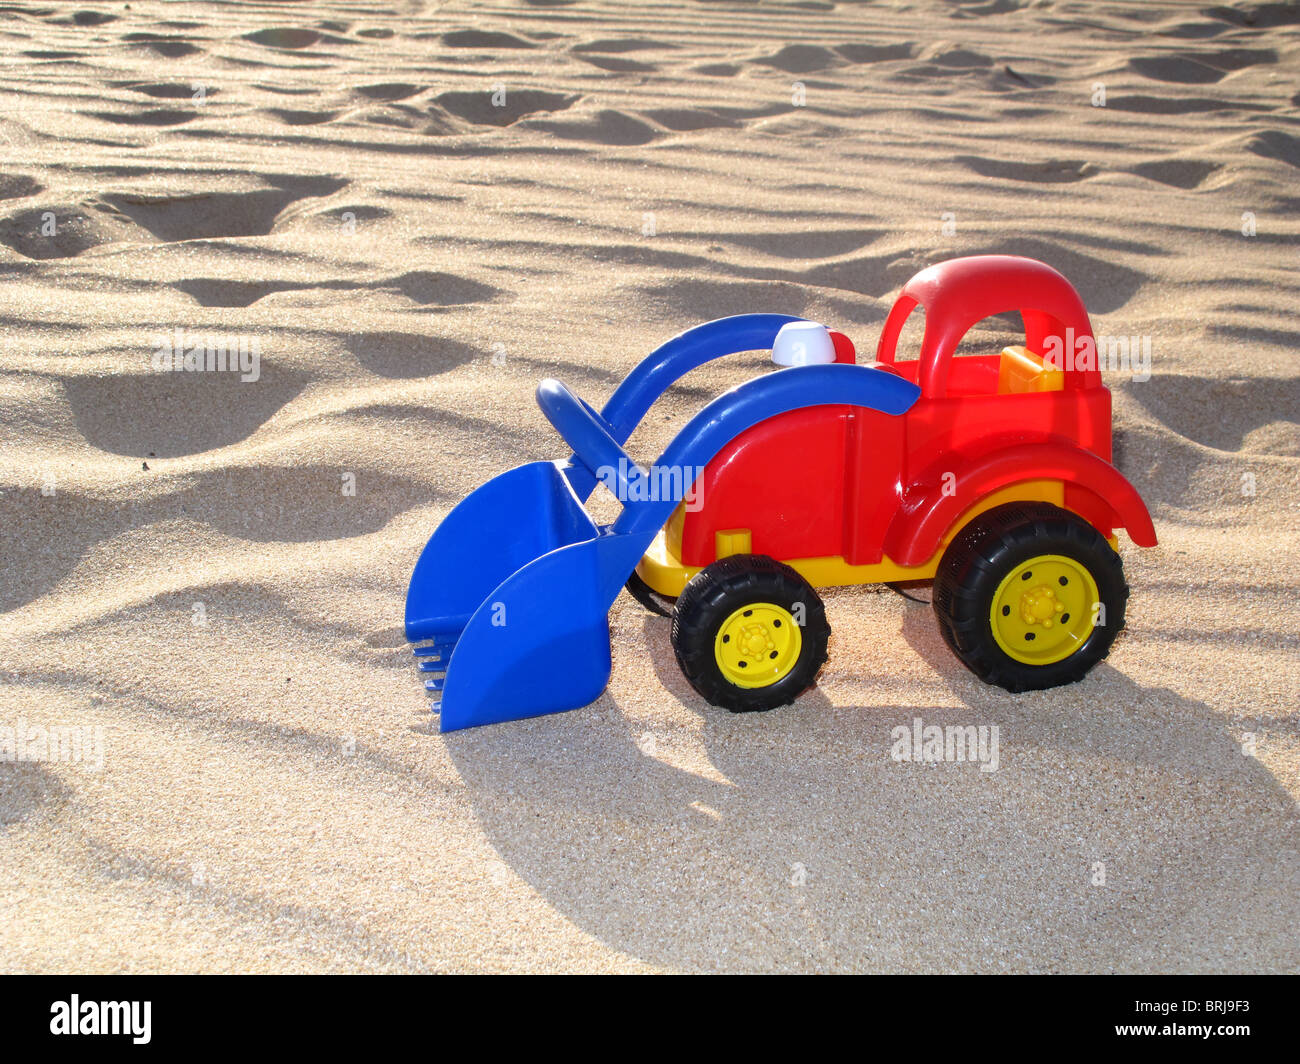 Camión de juguete de plástico de colores brillantes en la playa de arena Foto de stock